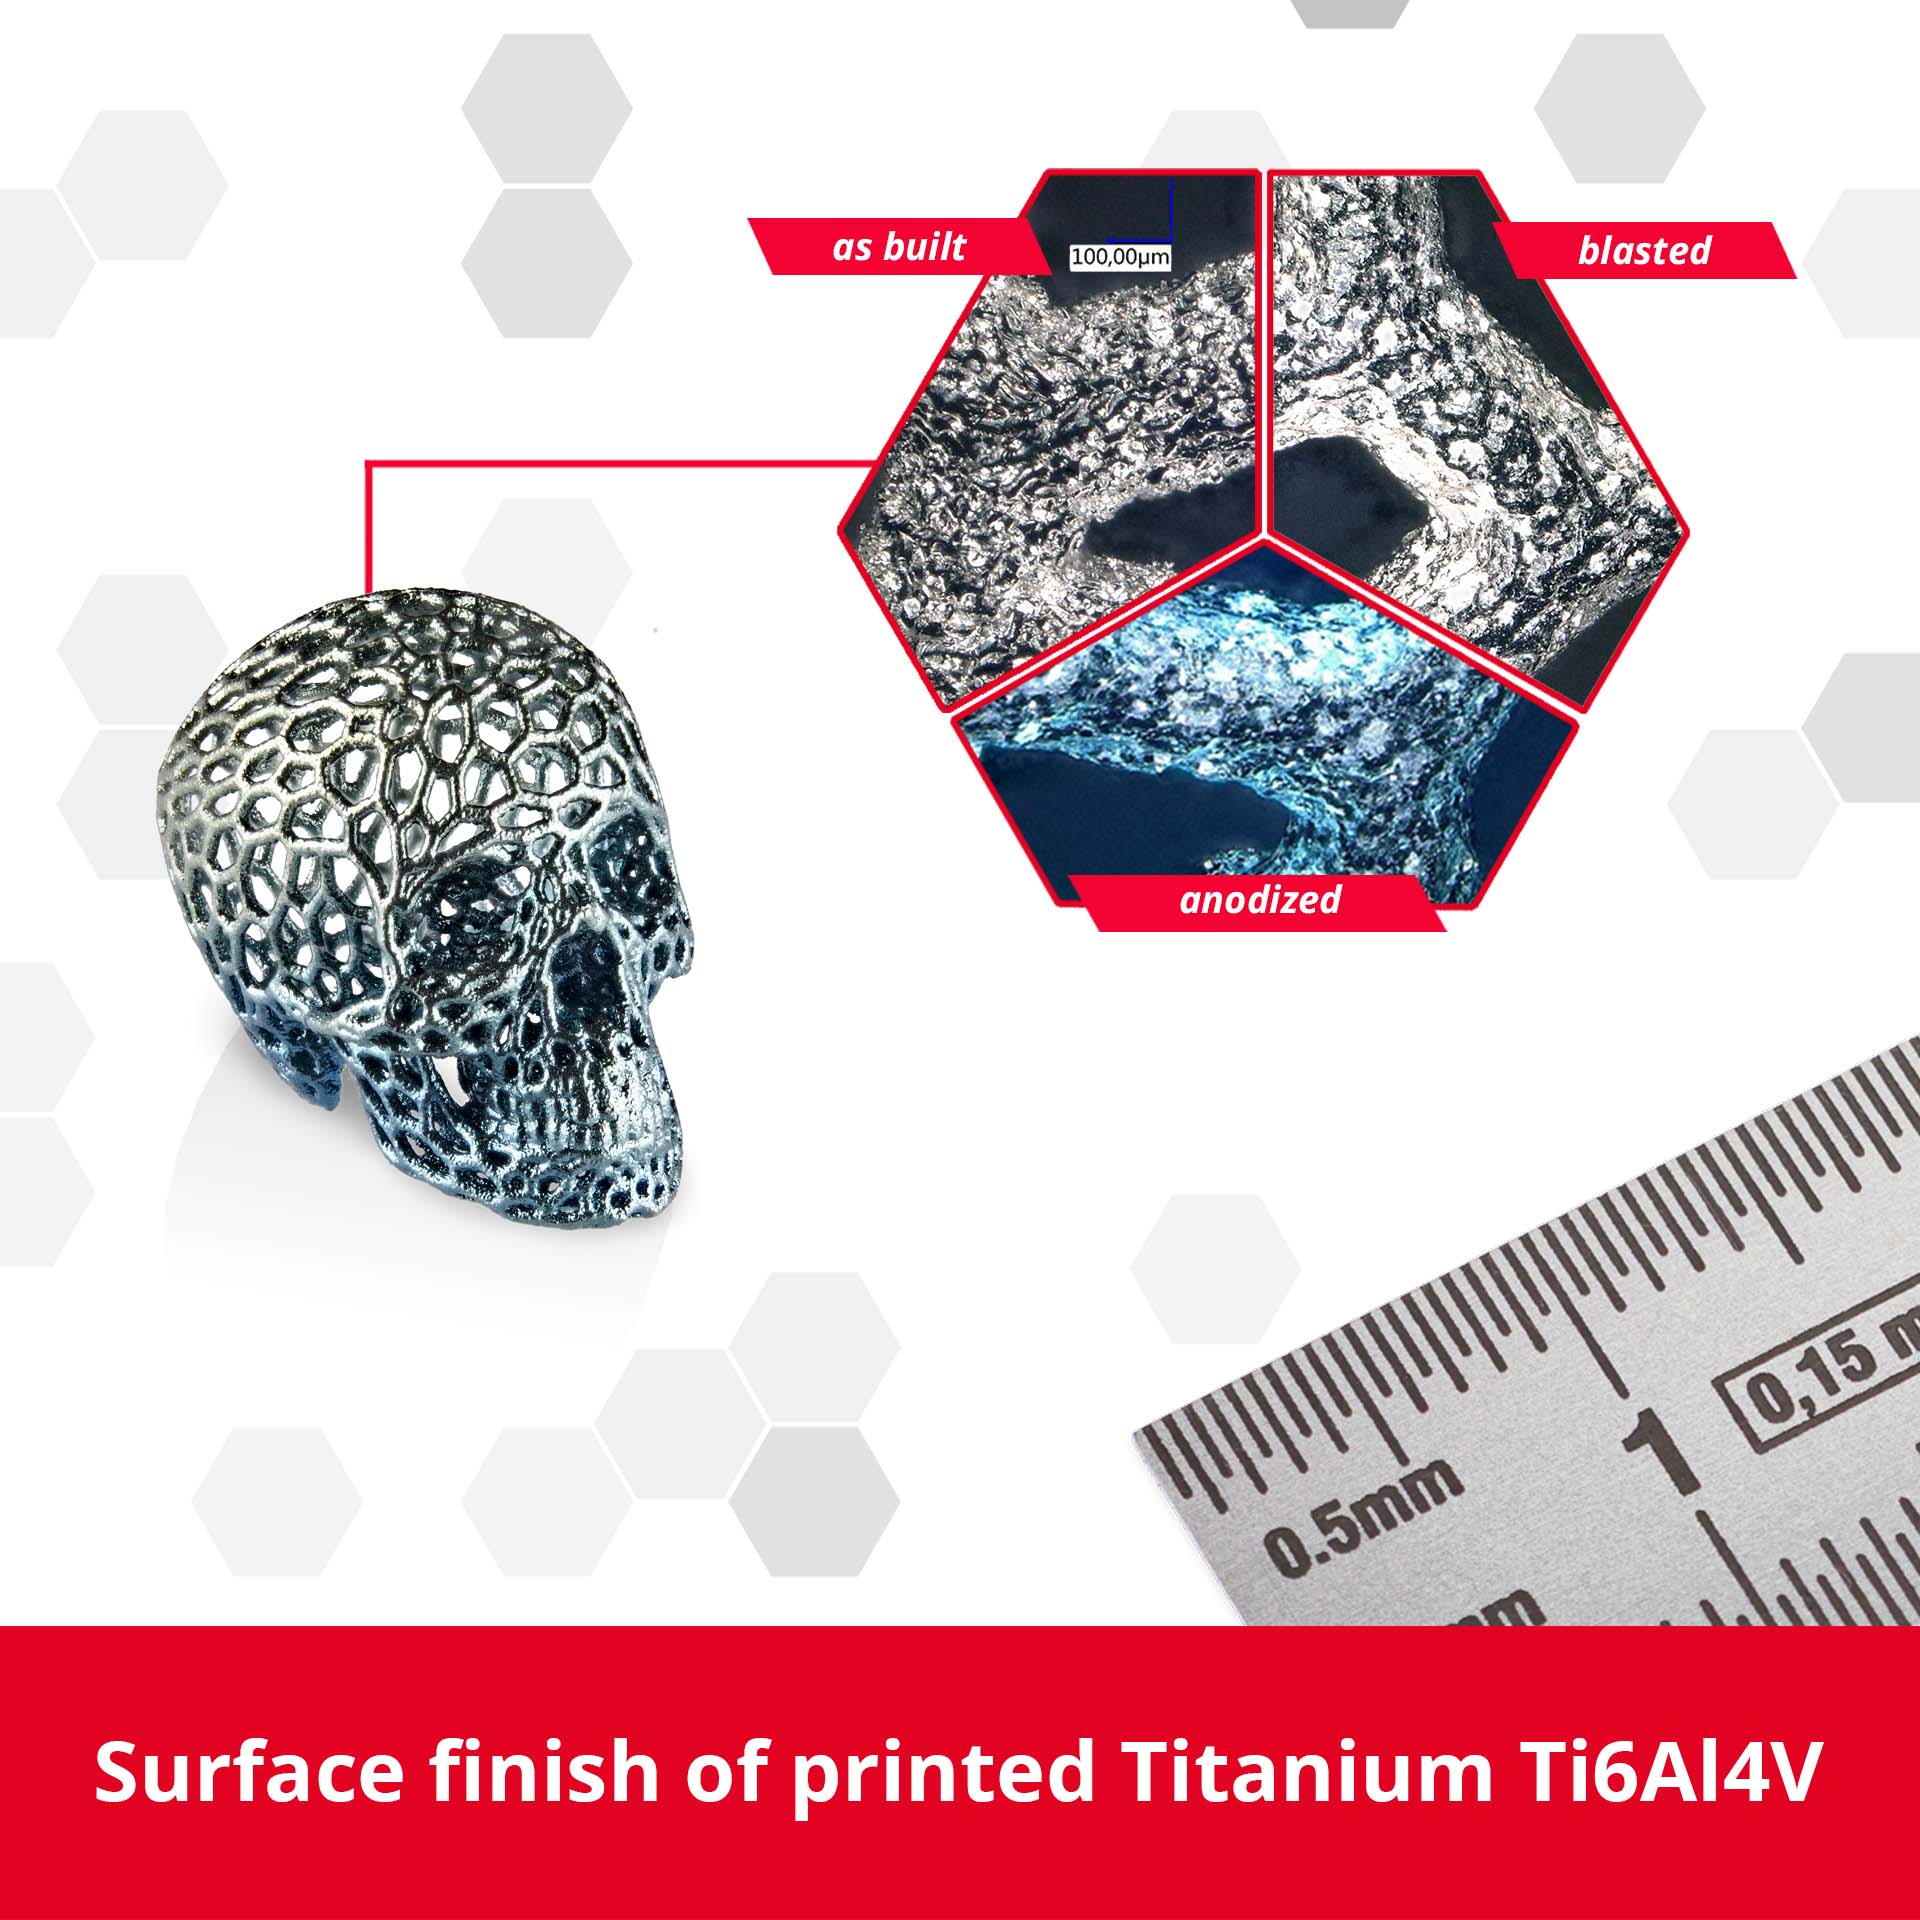 Surface finish of printed Titanium